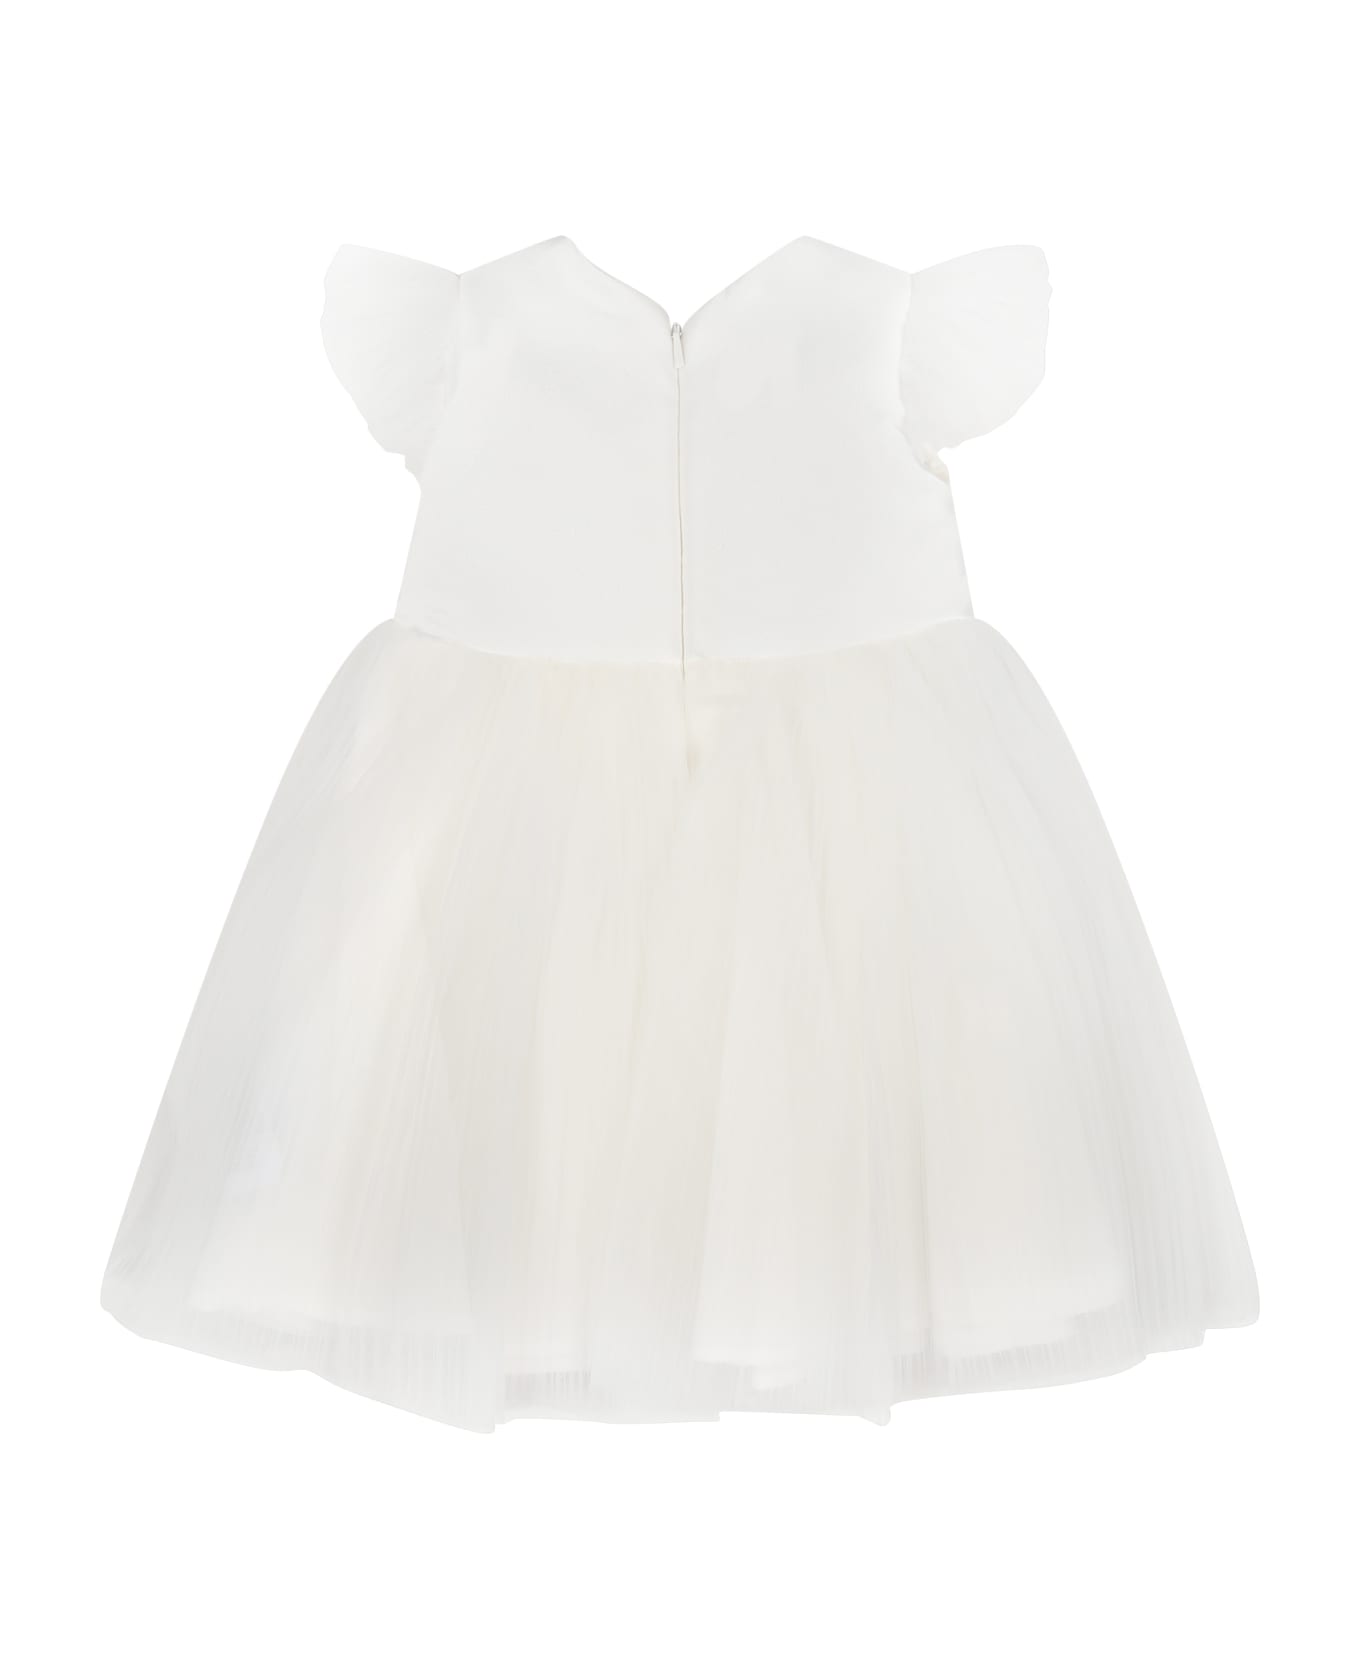 Monnalisa White Tulle Dress For Baby Girl - White ウェア